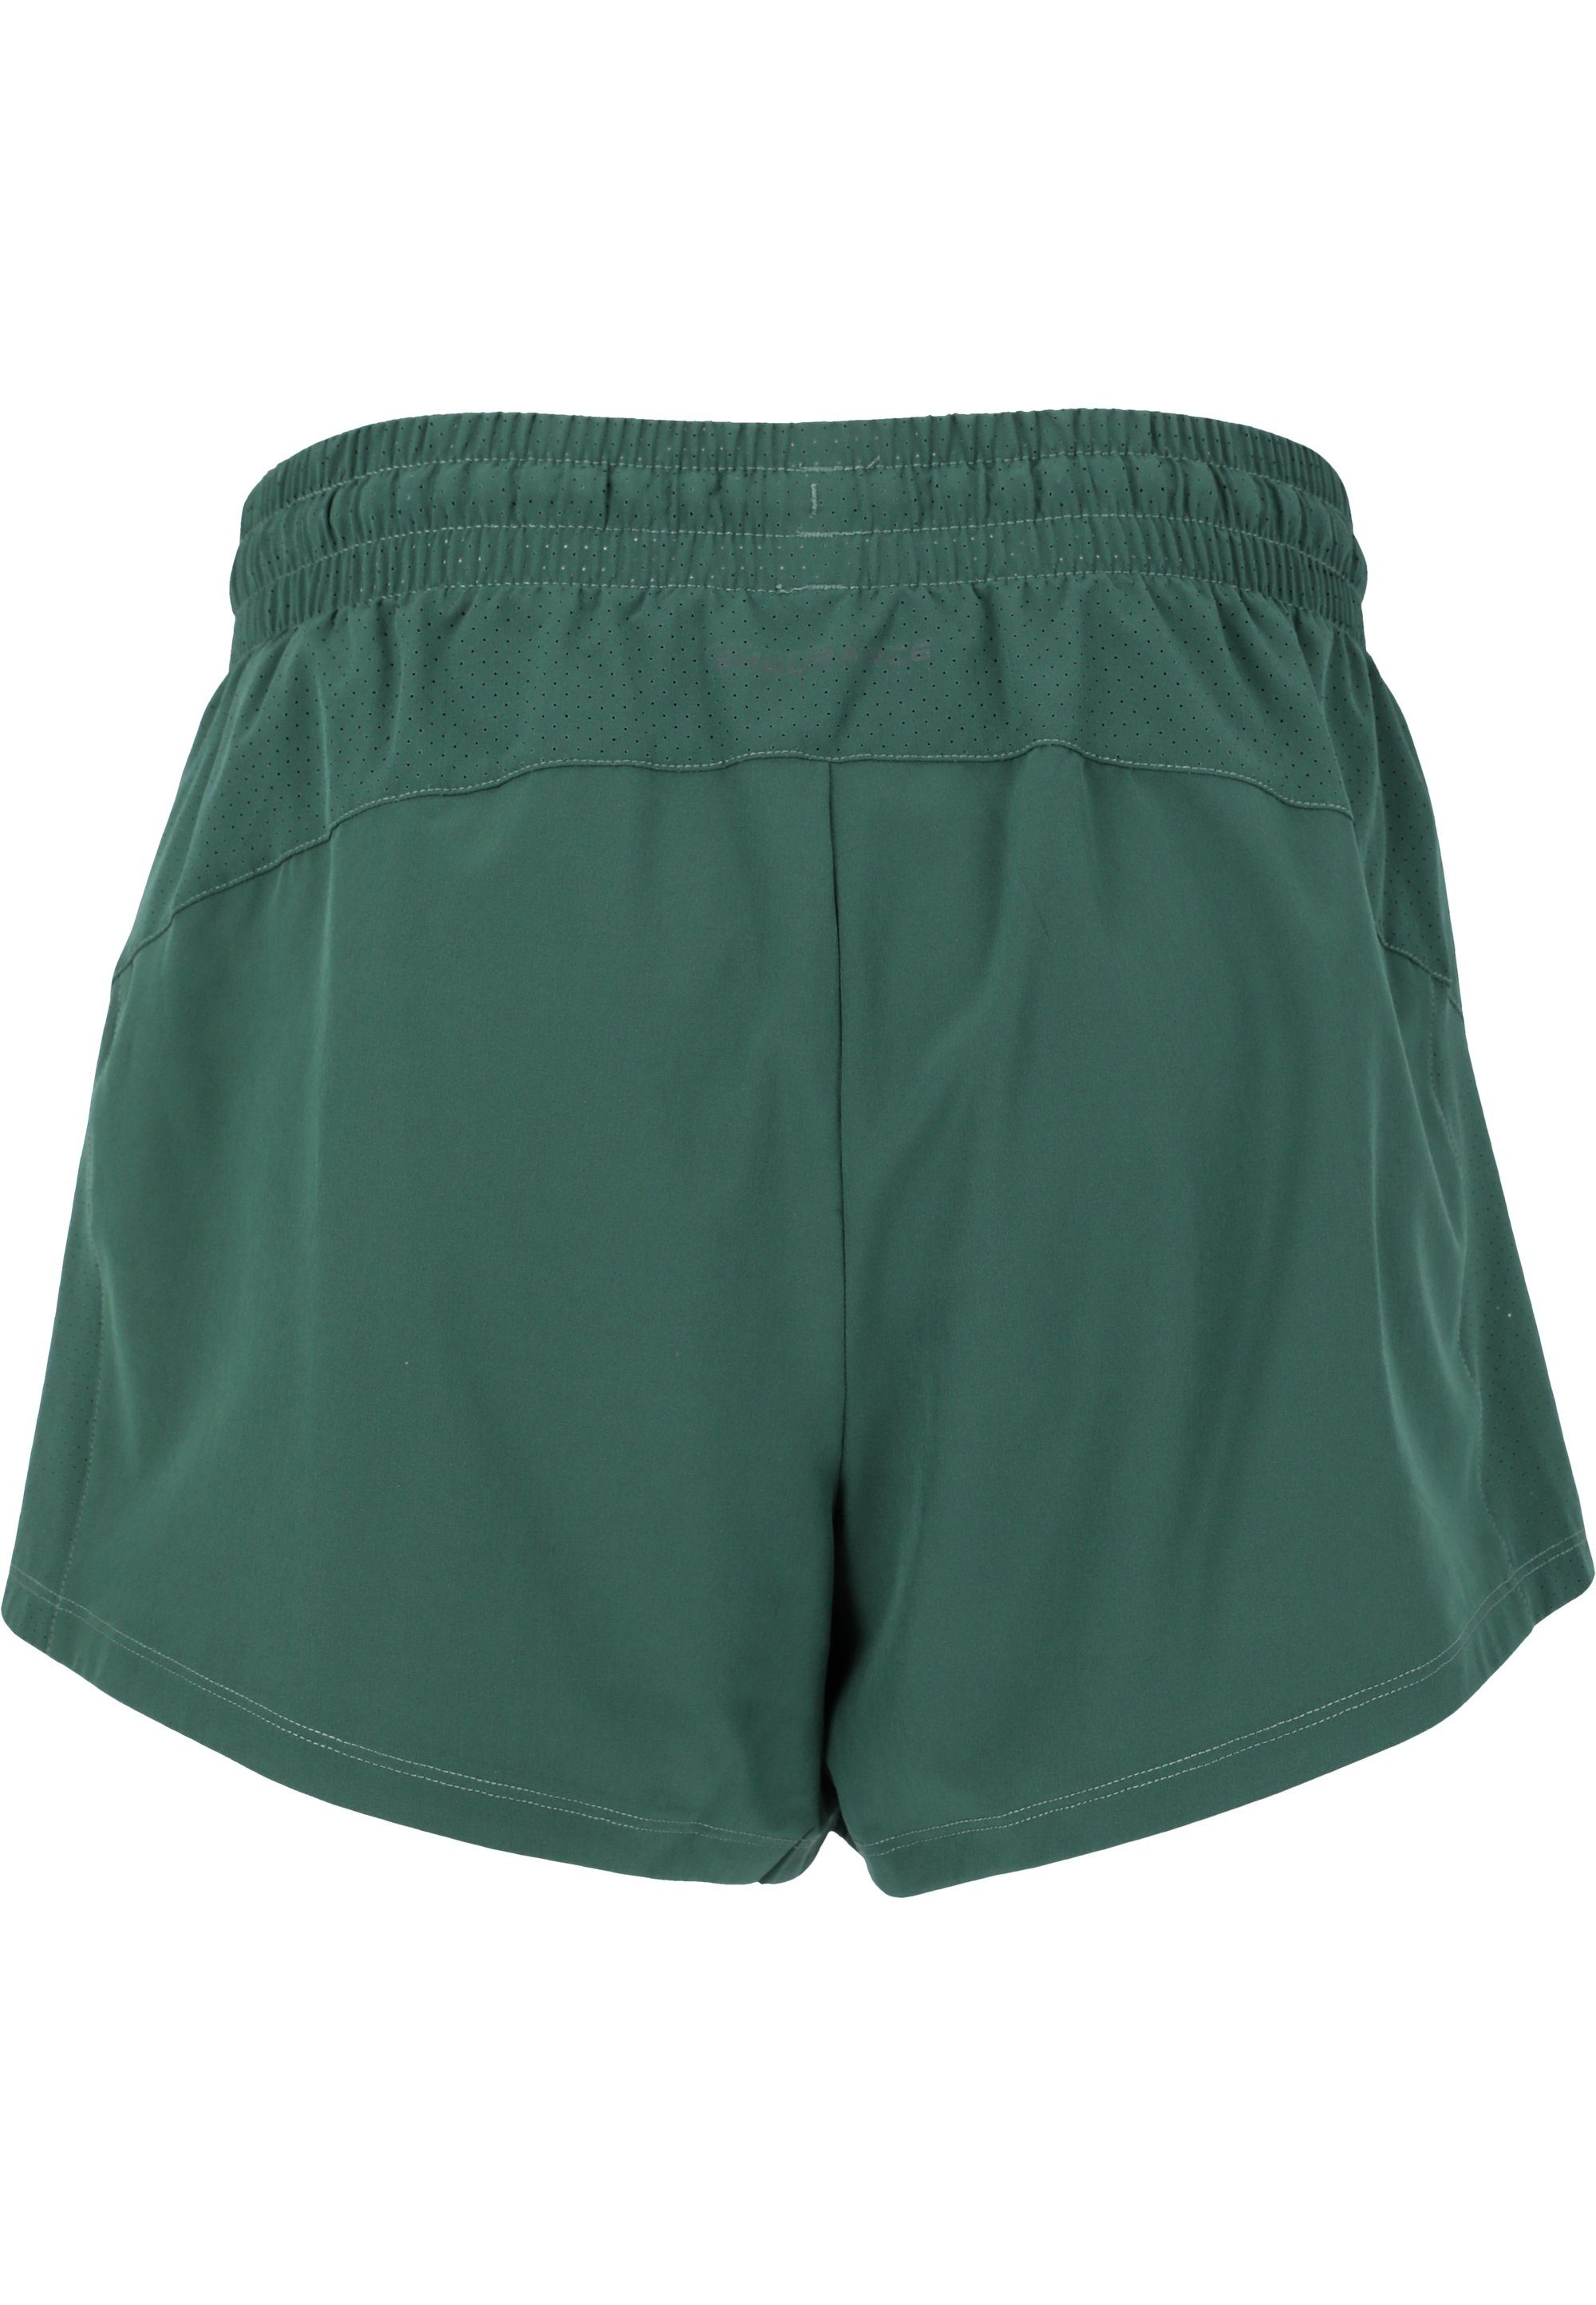 ENDURANCE grün Taschen Shorts praktischen Eslaire mit